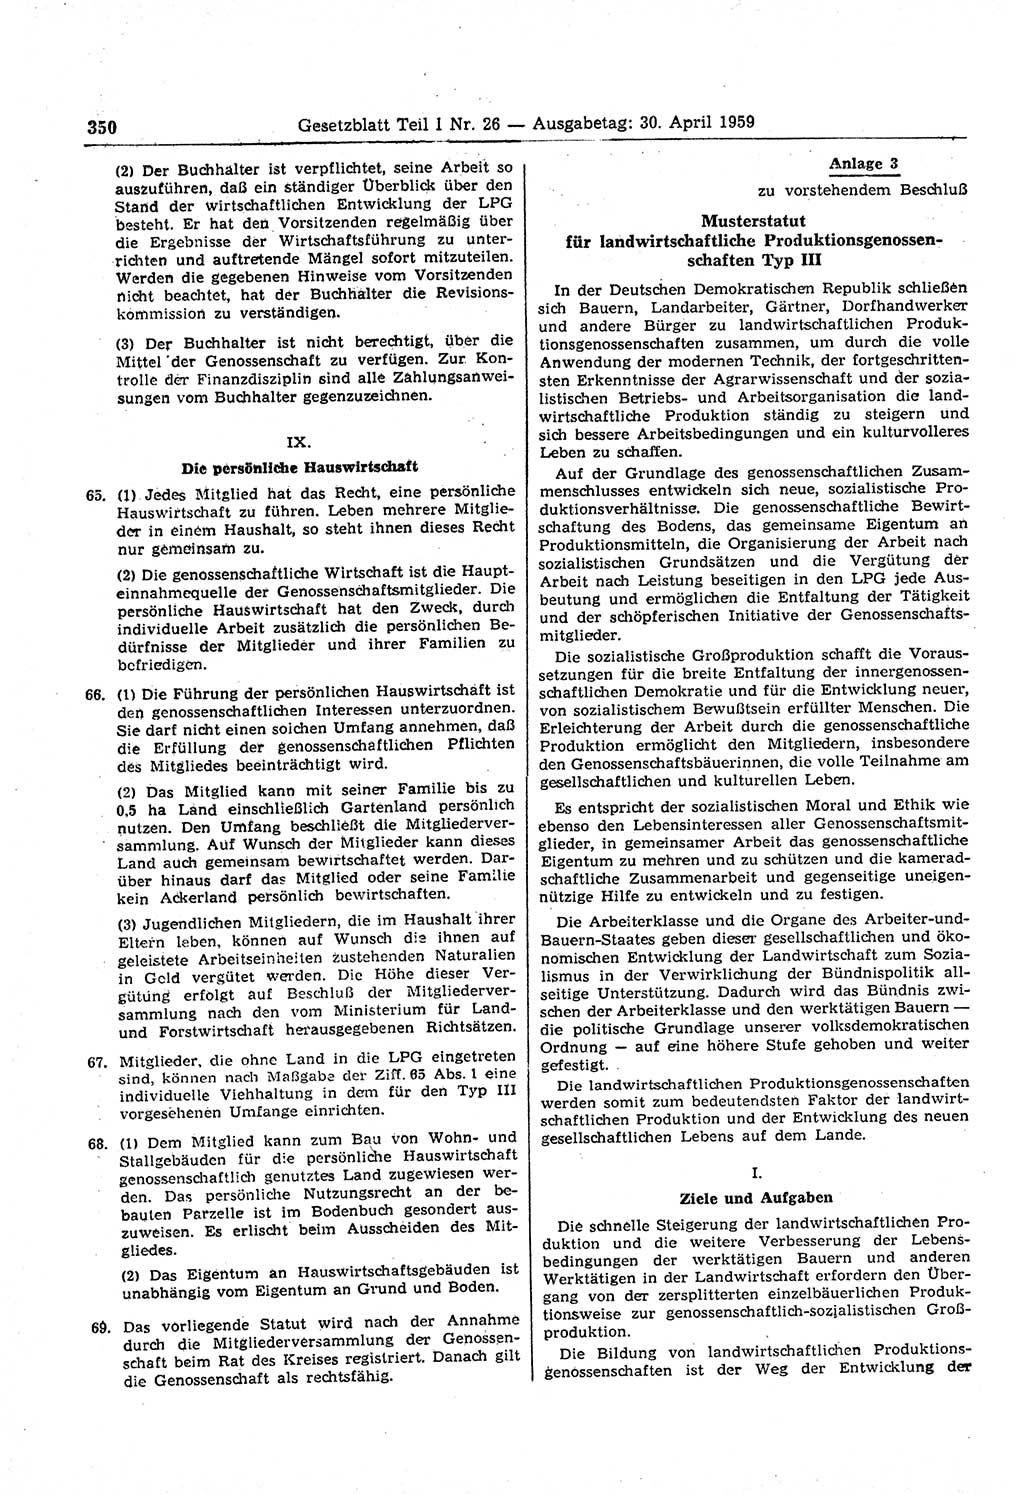 Gesetzblatt (GBl.) der Deutschen Demokratischen Republik (DDR) Teil Ⅰ 1959, Seite 350 (GBl. DDR Ⅰ 1959, S. 350)